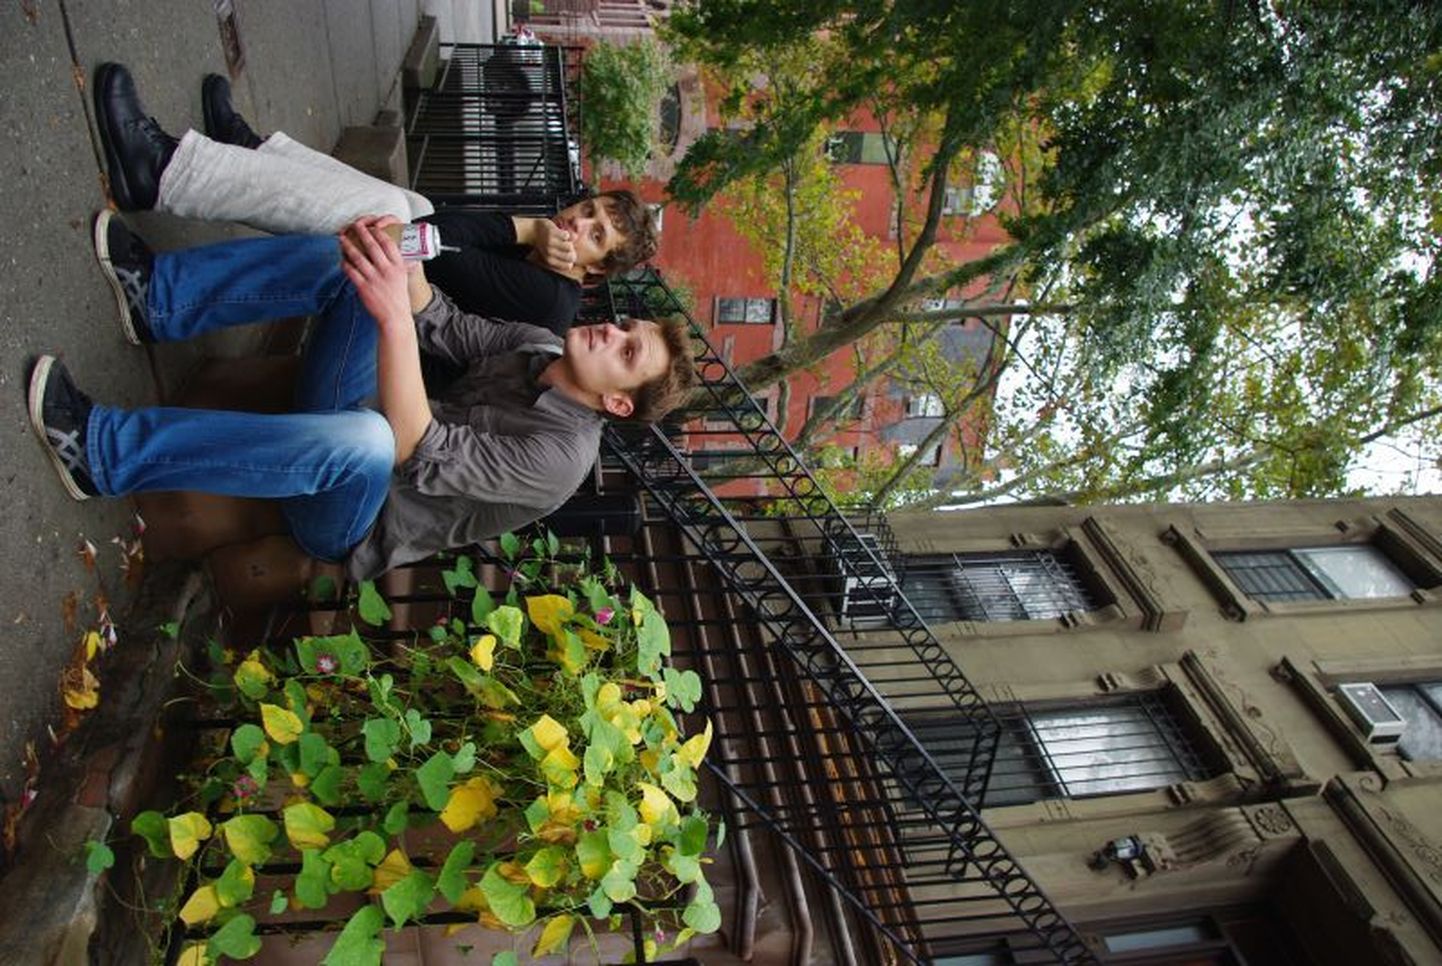 "Kogujate" näitlejad Tanel Ingi (vasakul, Langley Collyer) ja Janek
Vadi (Homer Collyer) Harlemis, 5. avenüü ja E 128. tänava nurgal,
vendade Collyerite endise maja kõrvaltrepil.